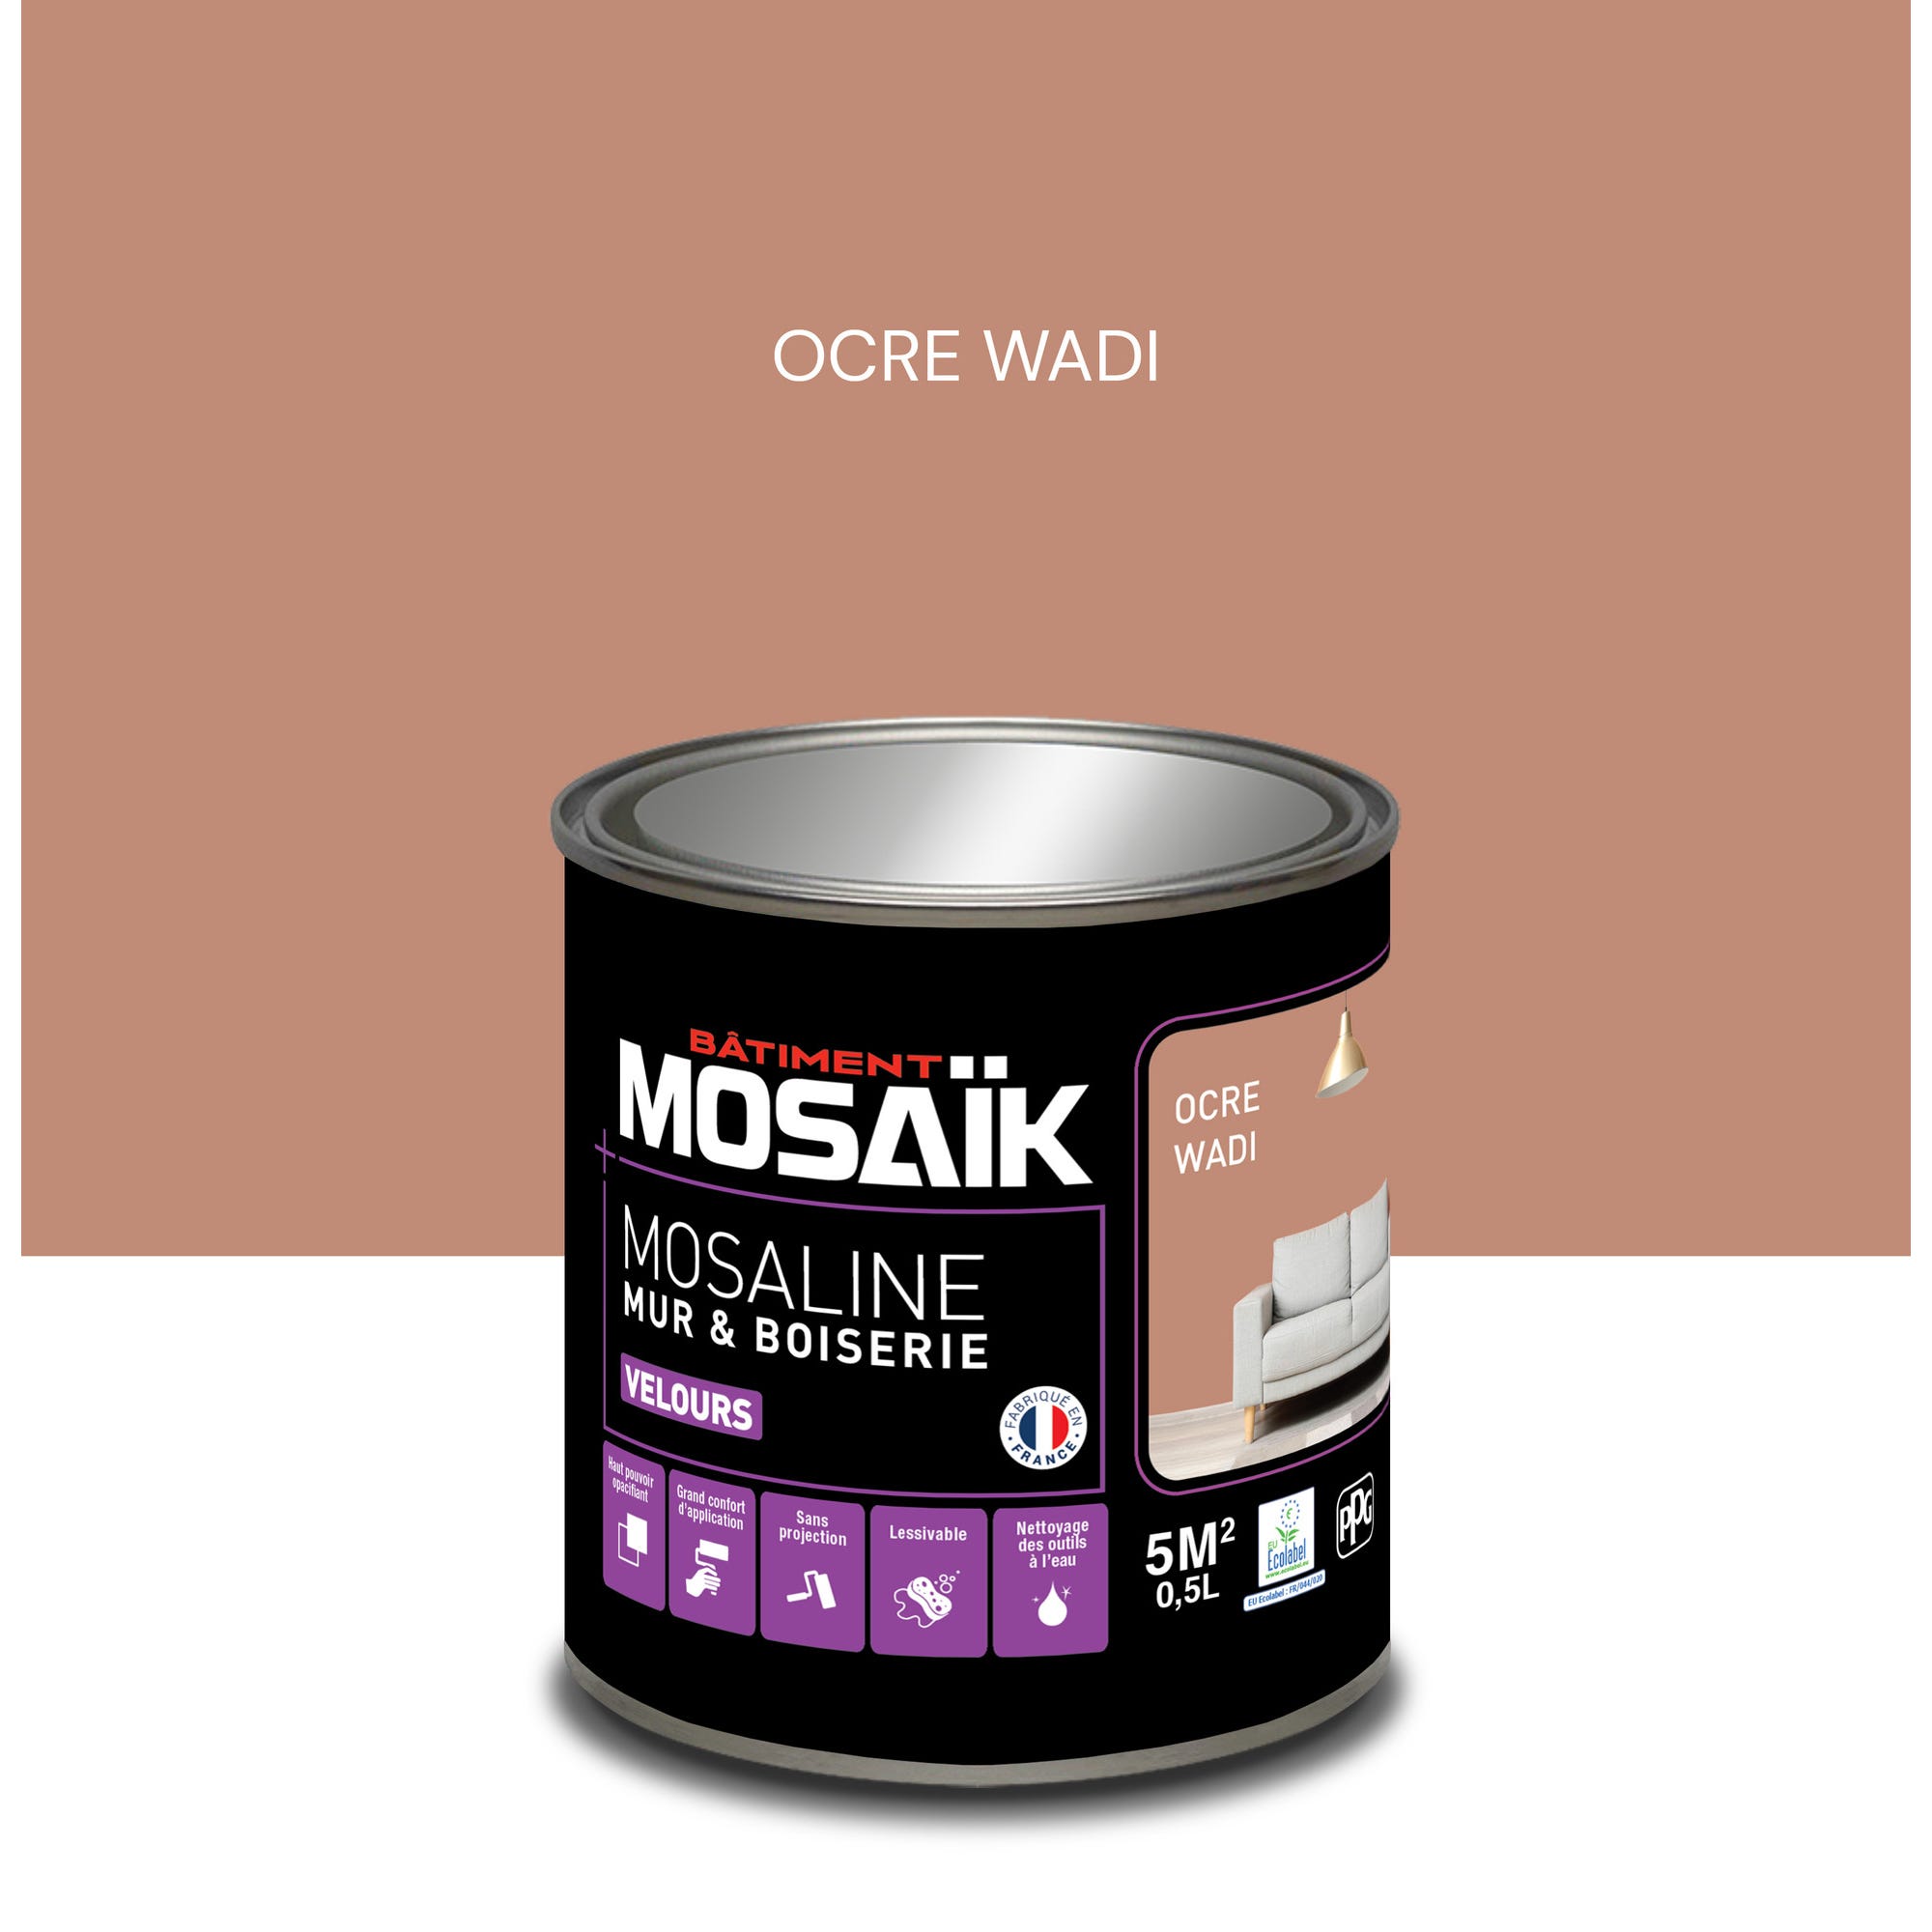 Peinture intérieure multi support acrylique velours ocre wadi 0,5 L Mosaline - MOSAIK 0